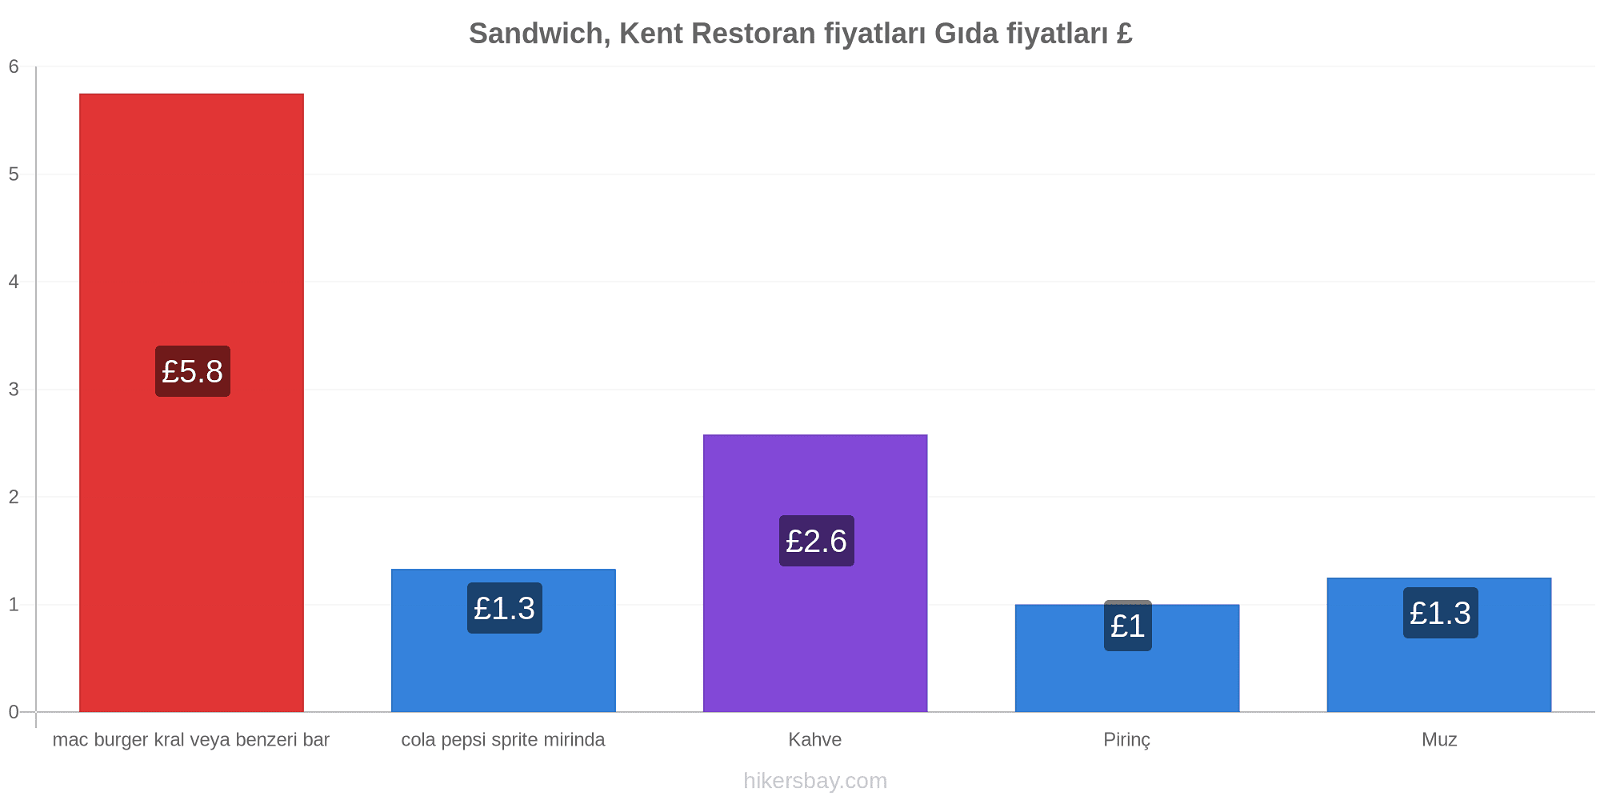 Sandwich, Kent fiyat değişiklikleri hikersbay.com